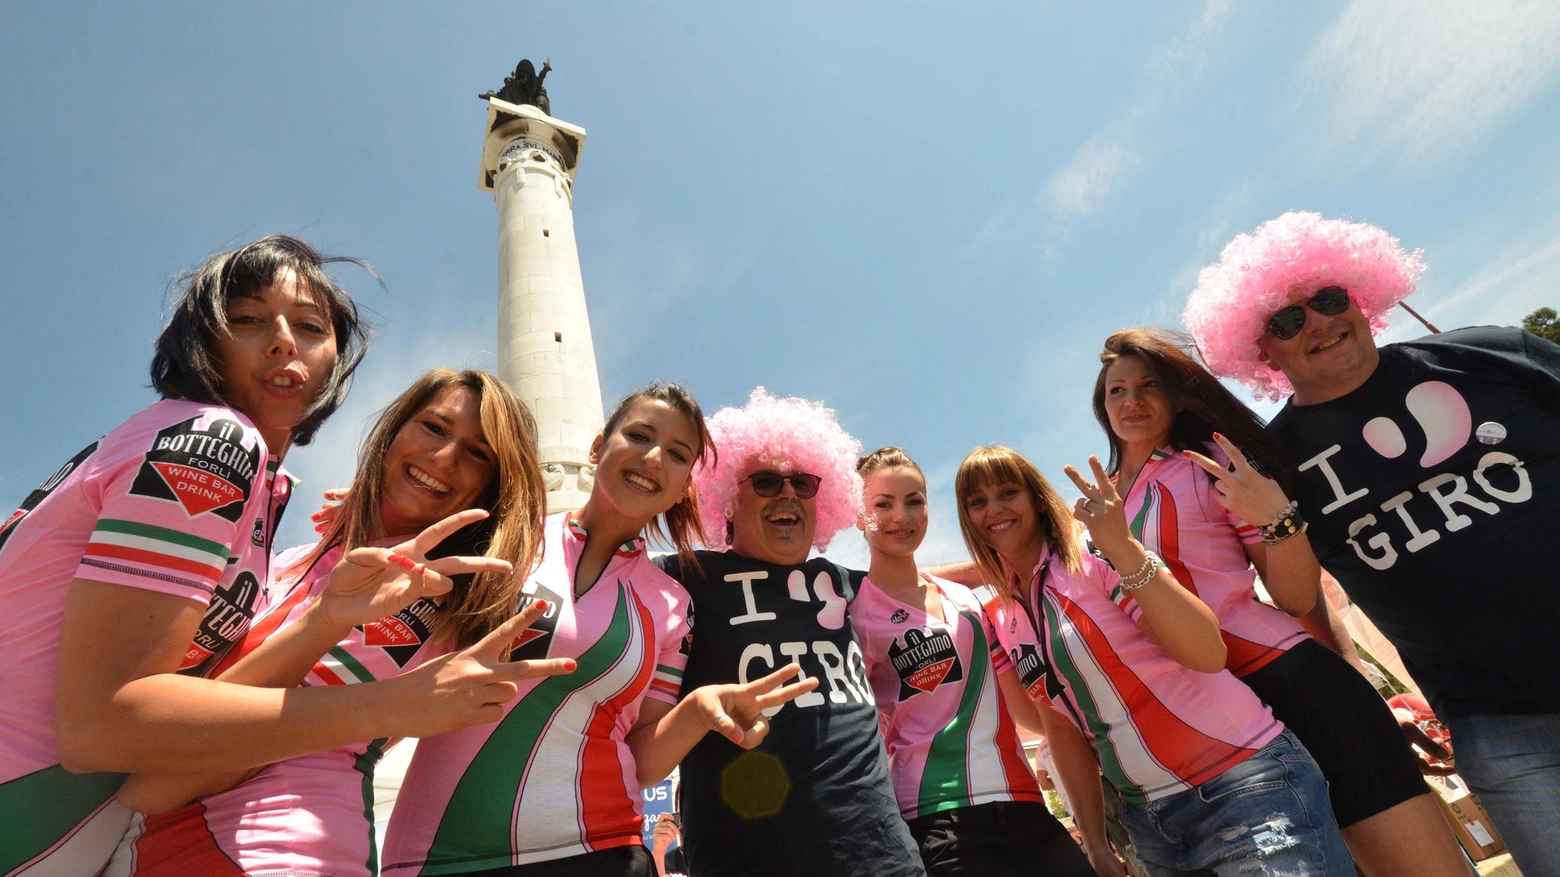 Giro d'Italia, la festa nelle piazze